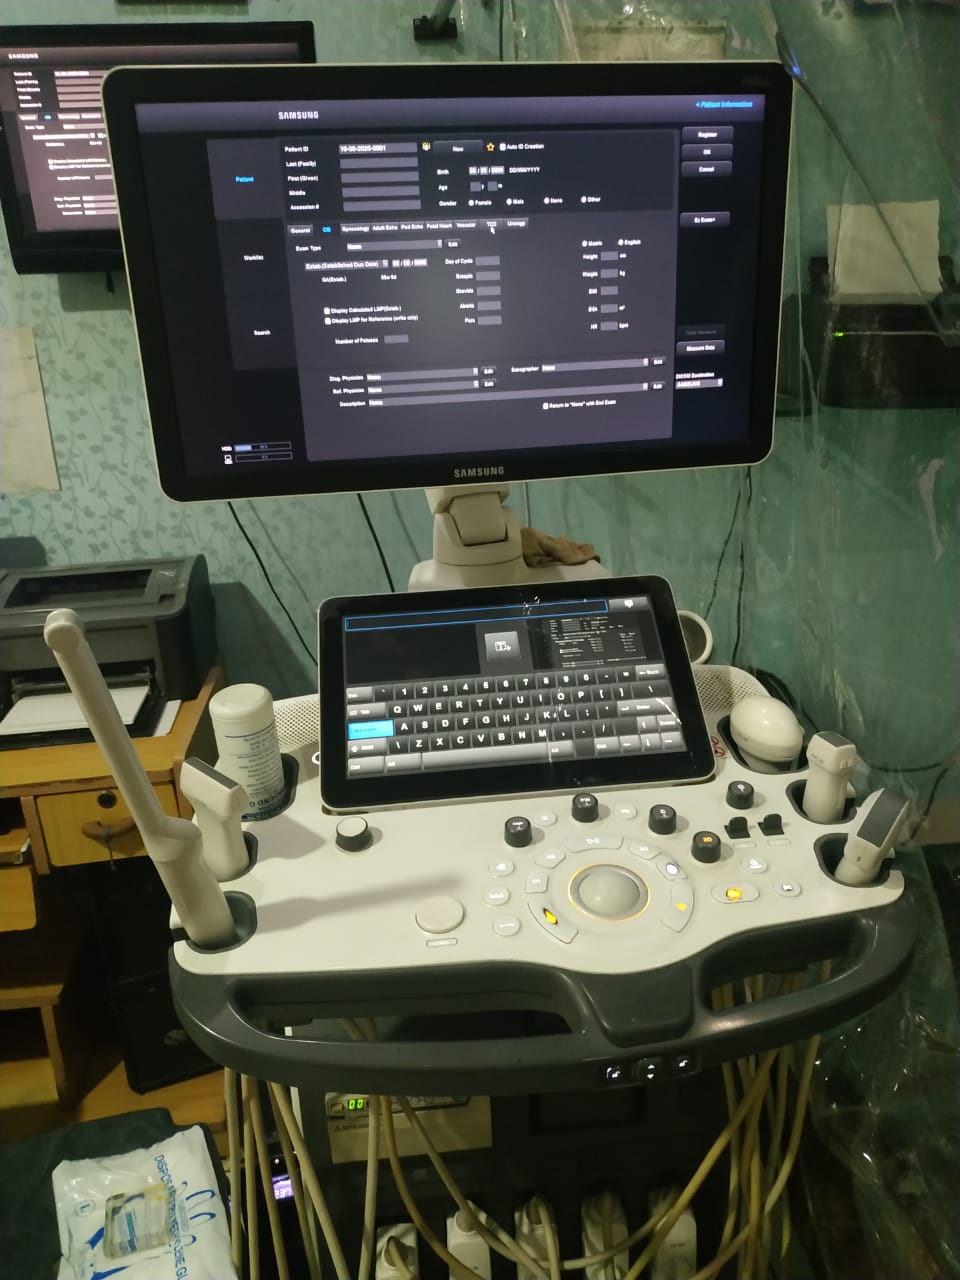 20Med Ultrasound Diagnostic SAMSUNG HEALTHCARE RS 80A